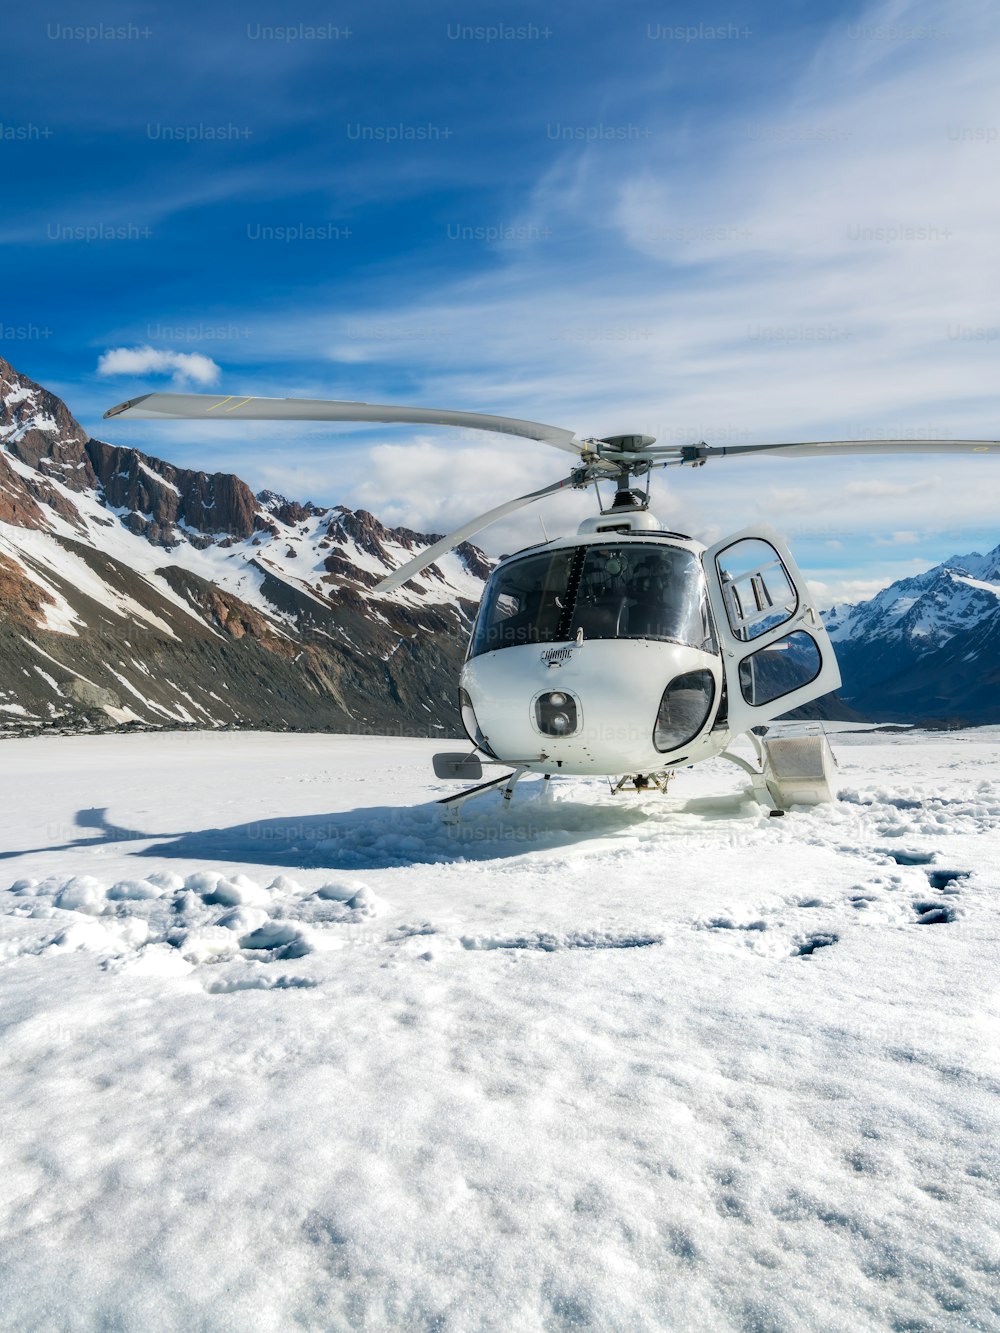 뉴질랜드 마운트 쿡의 태즈먼 빙하에 있는 설산에 헬리콥터 착륙. 마운트 쿡 (Mt Cook)의 헬리콥터 서비스는 관광 비행, 빙하 착륙 및 긴급 구조를 제공합니다.